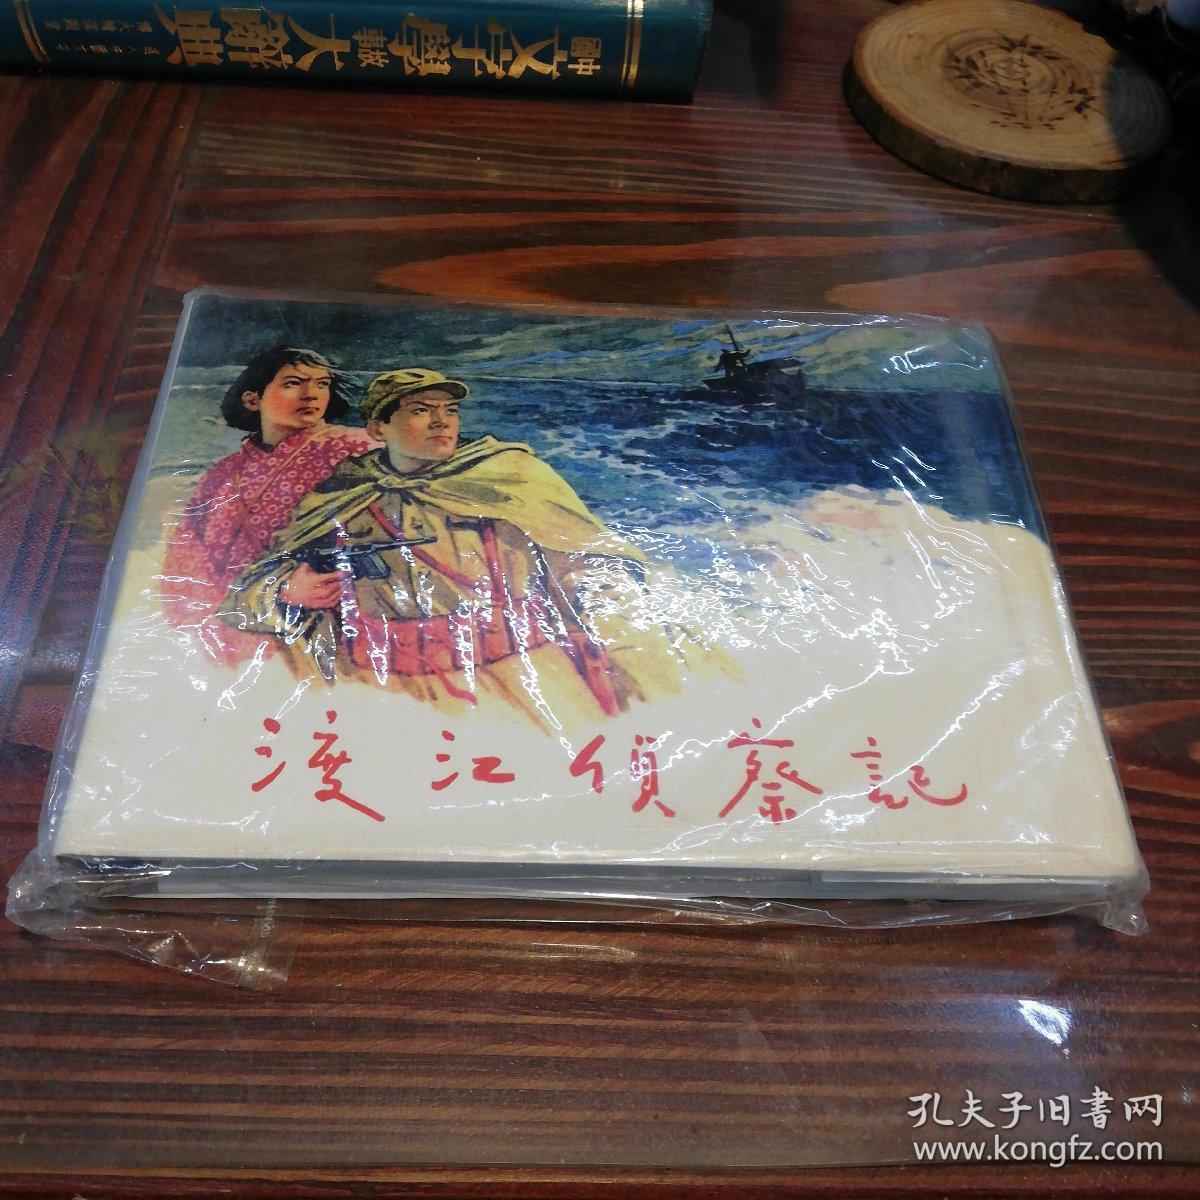 渡江侦察记     上海人民美术出版社32开精装本连环画      2004年一版一印仅印4000册